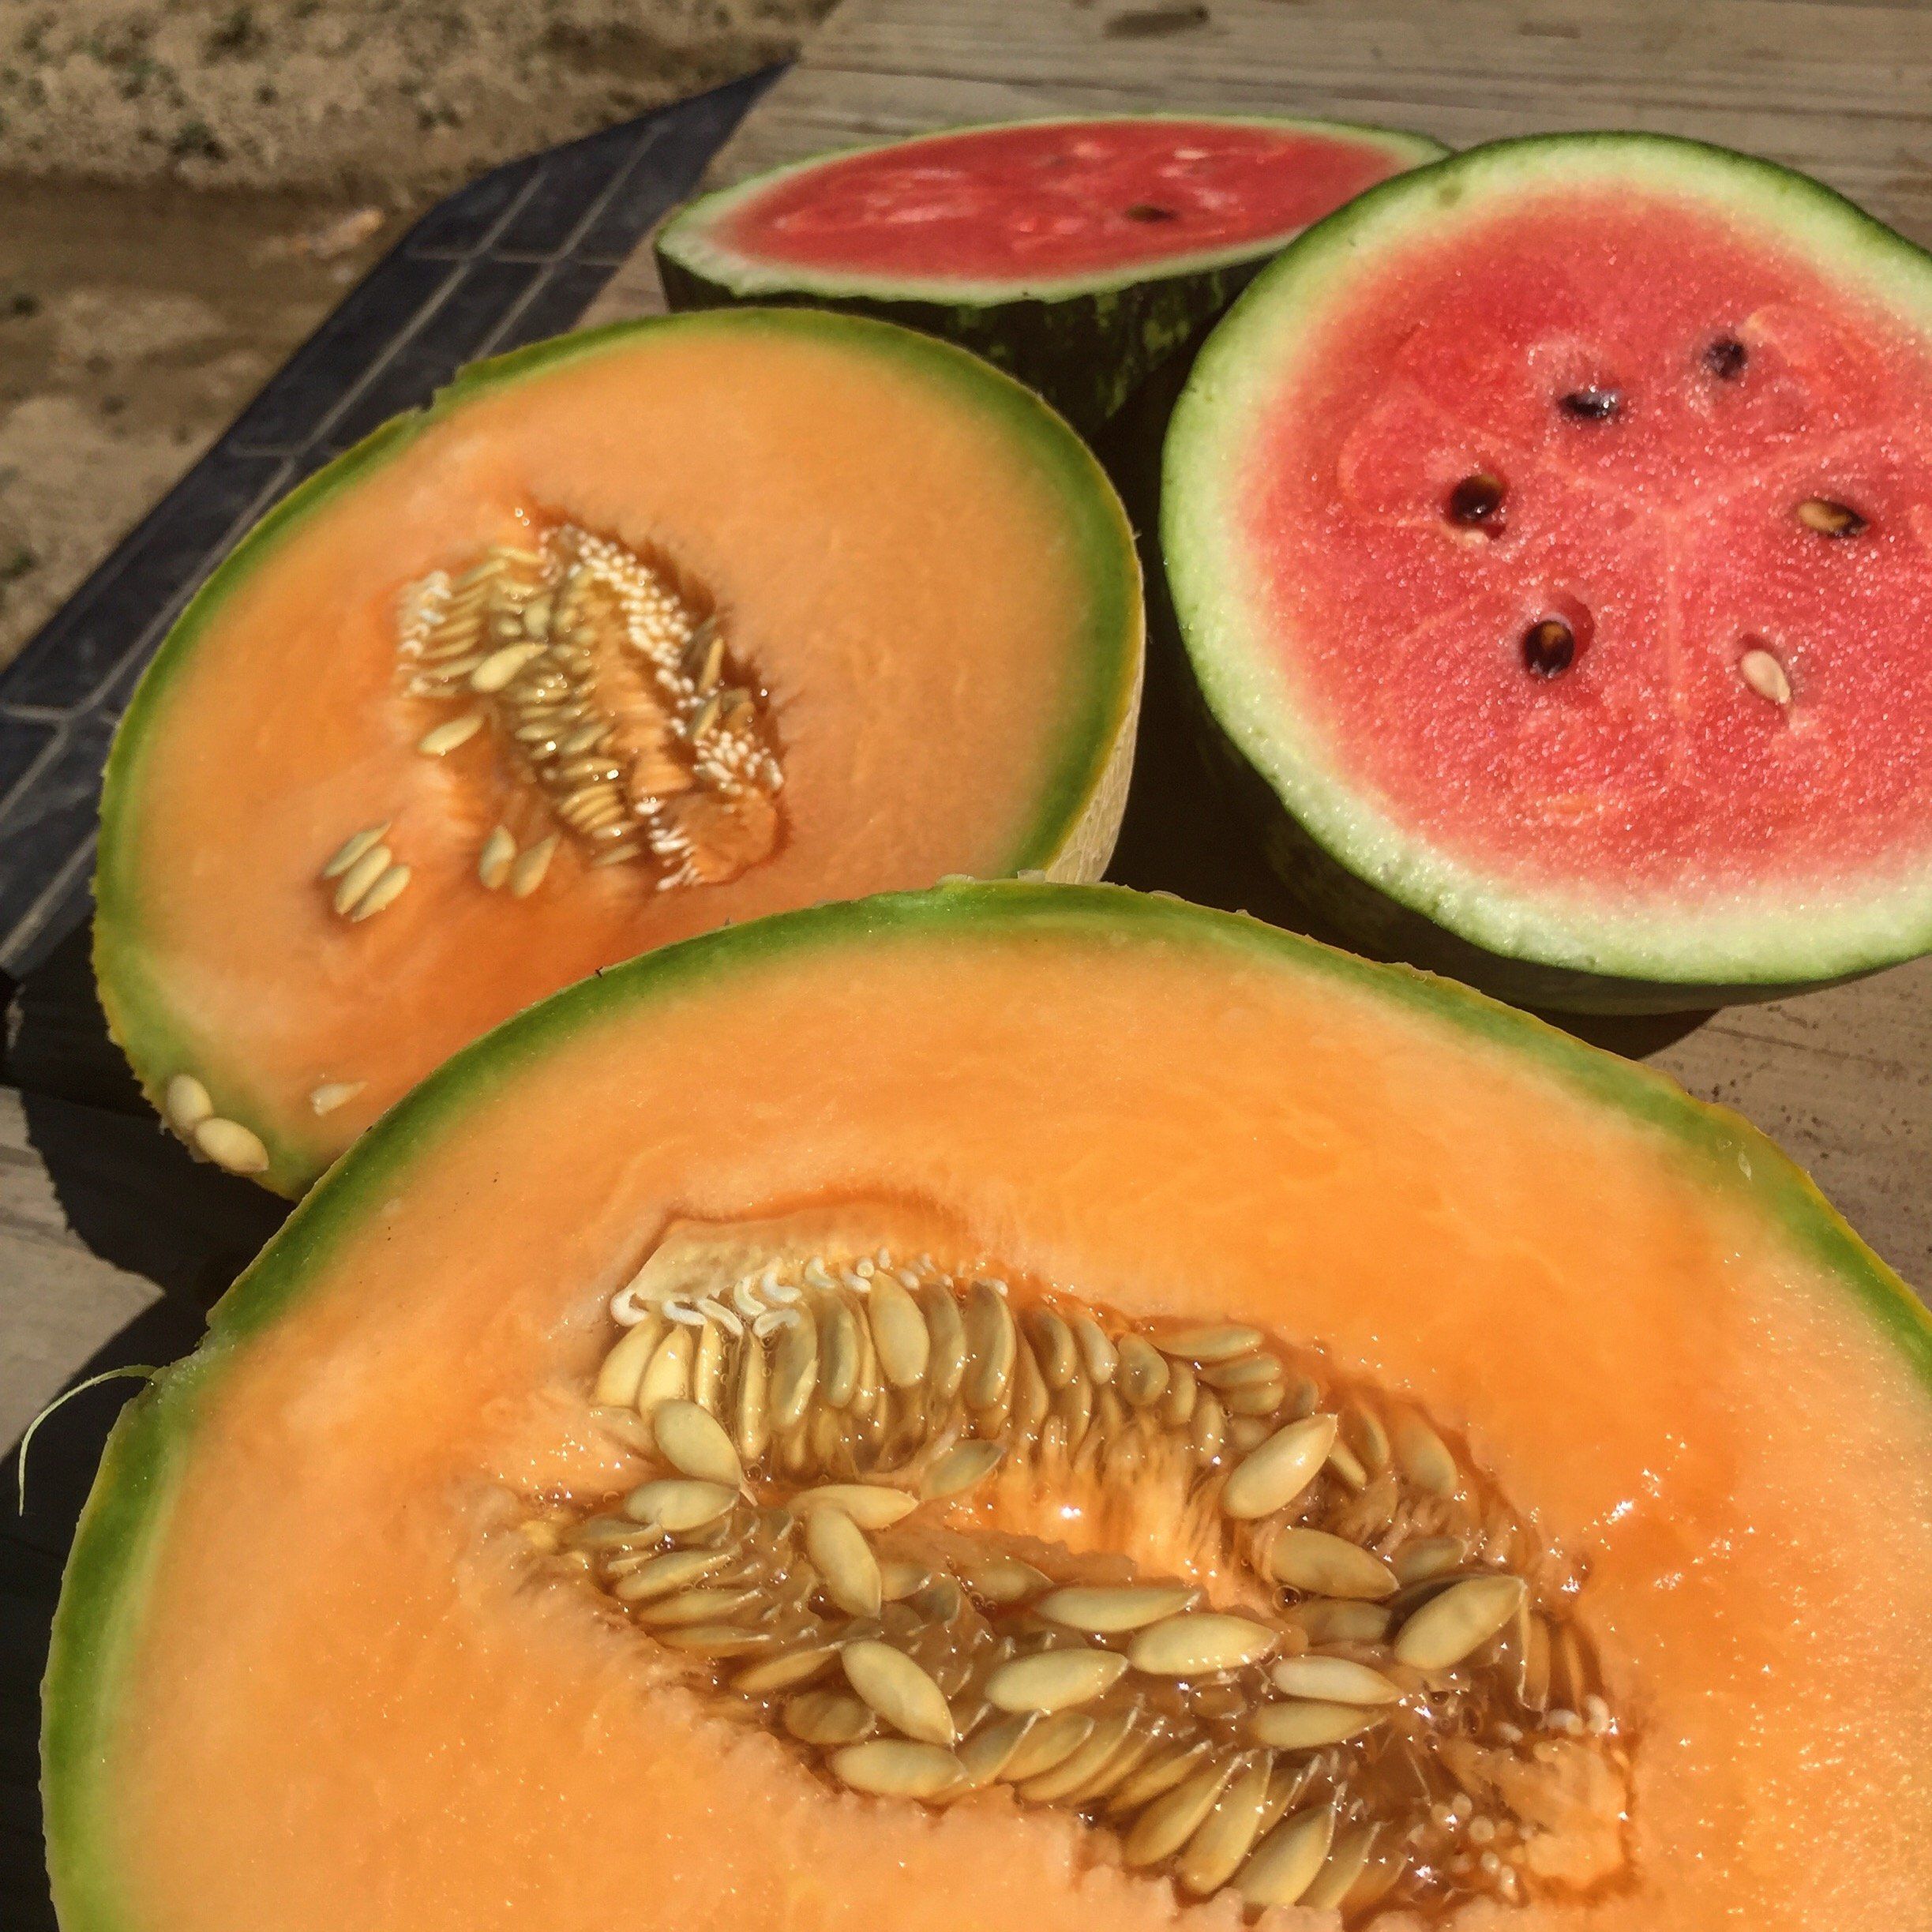 Week 10!  It's Melon Season!